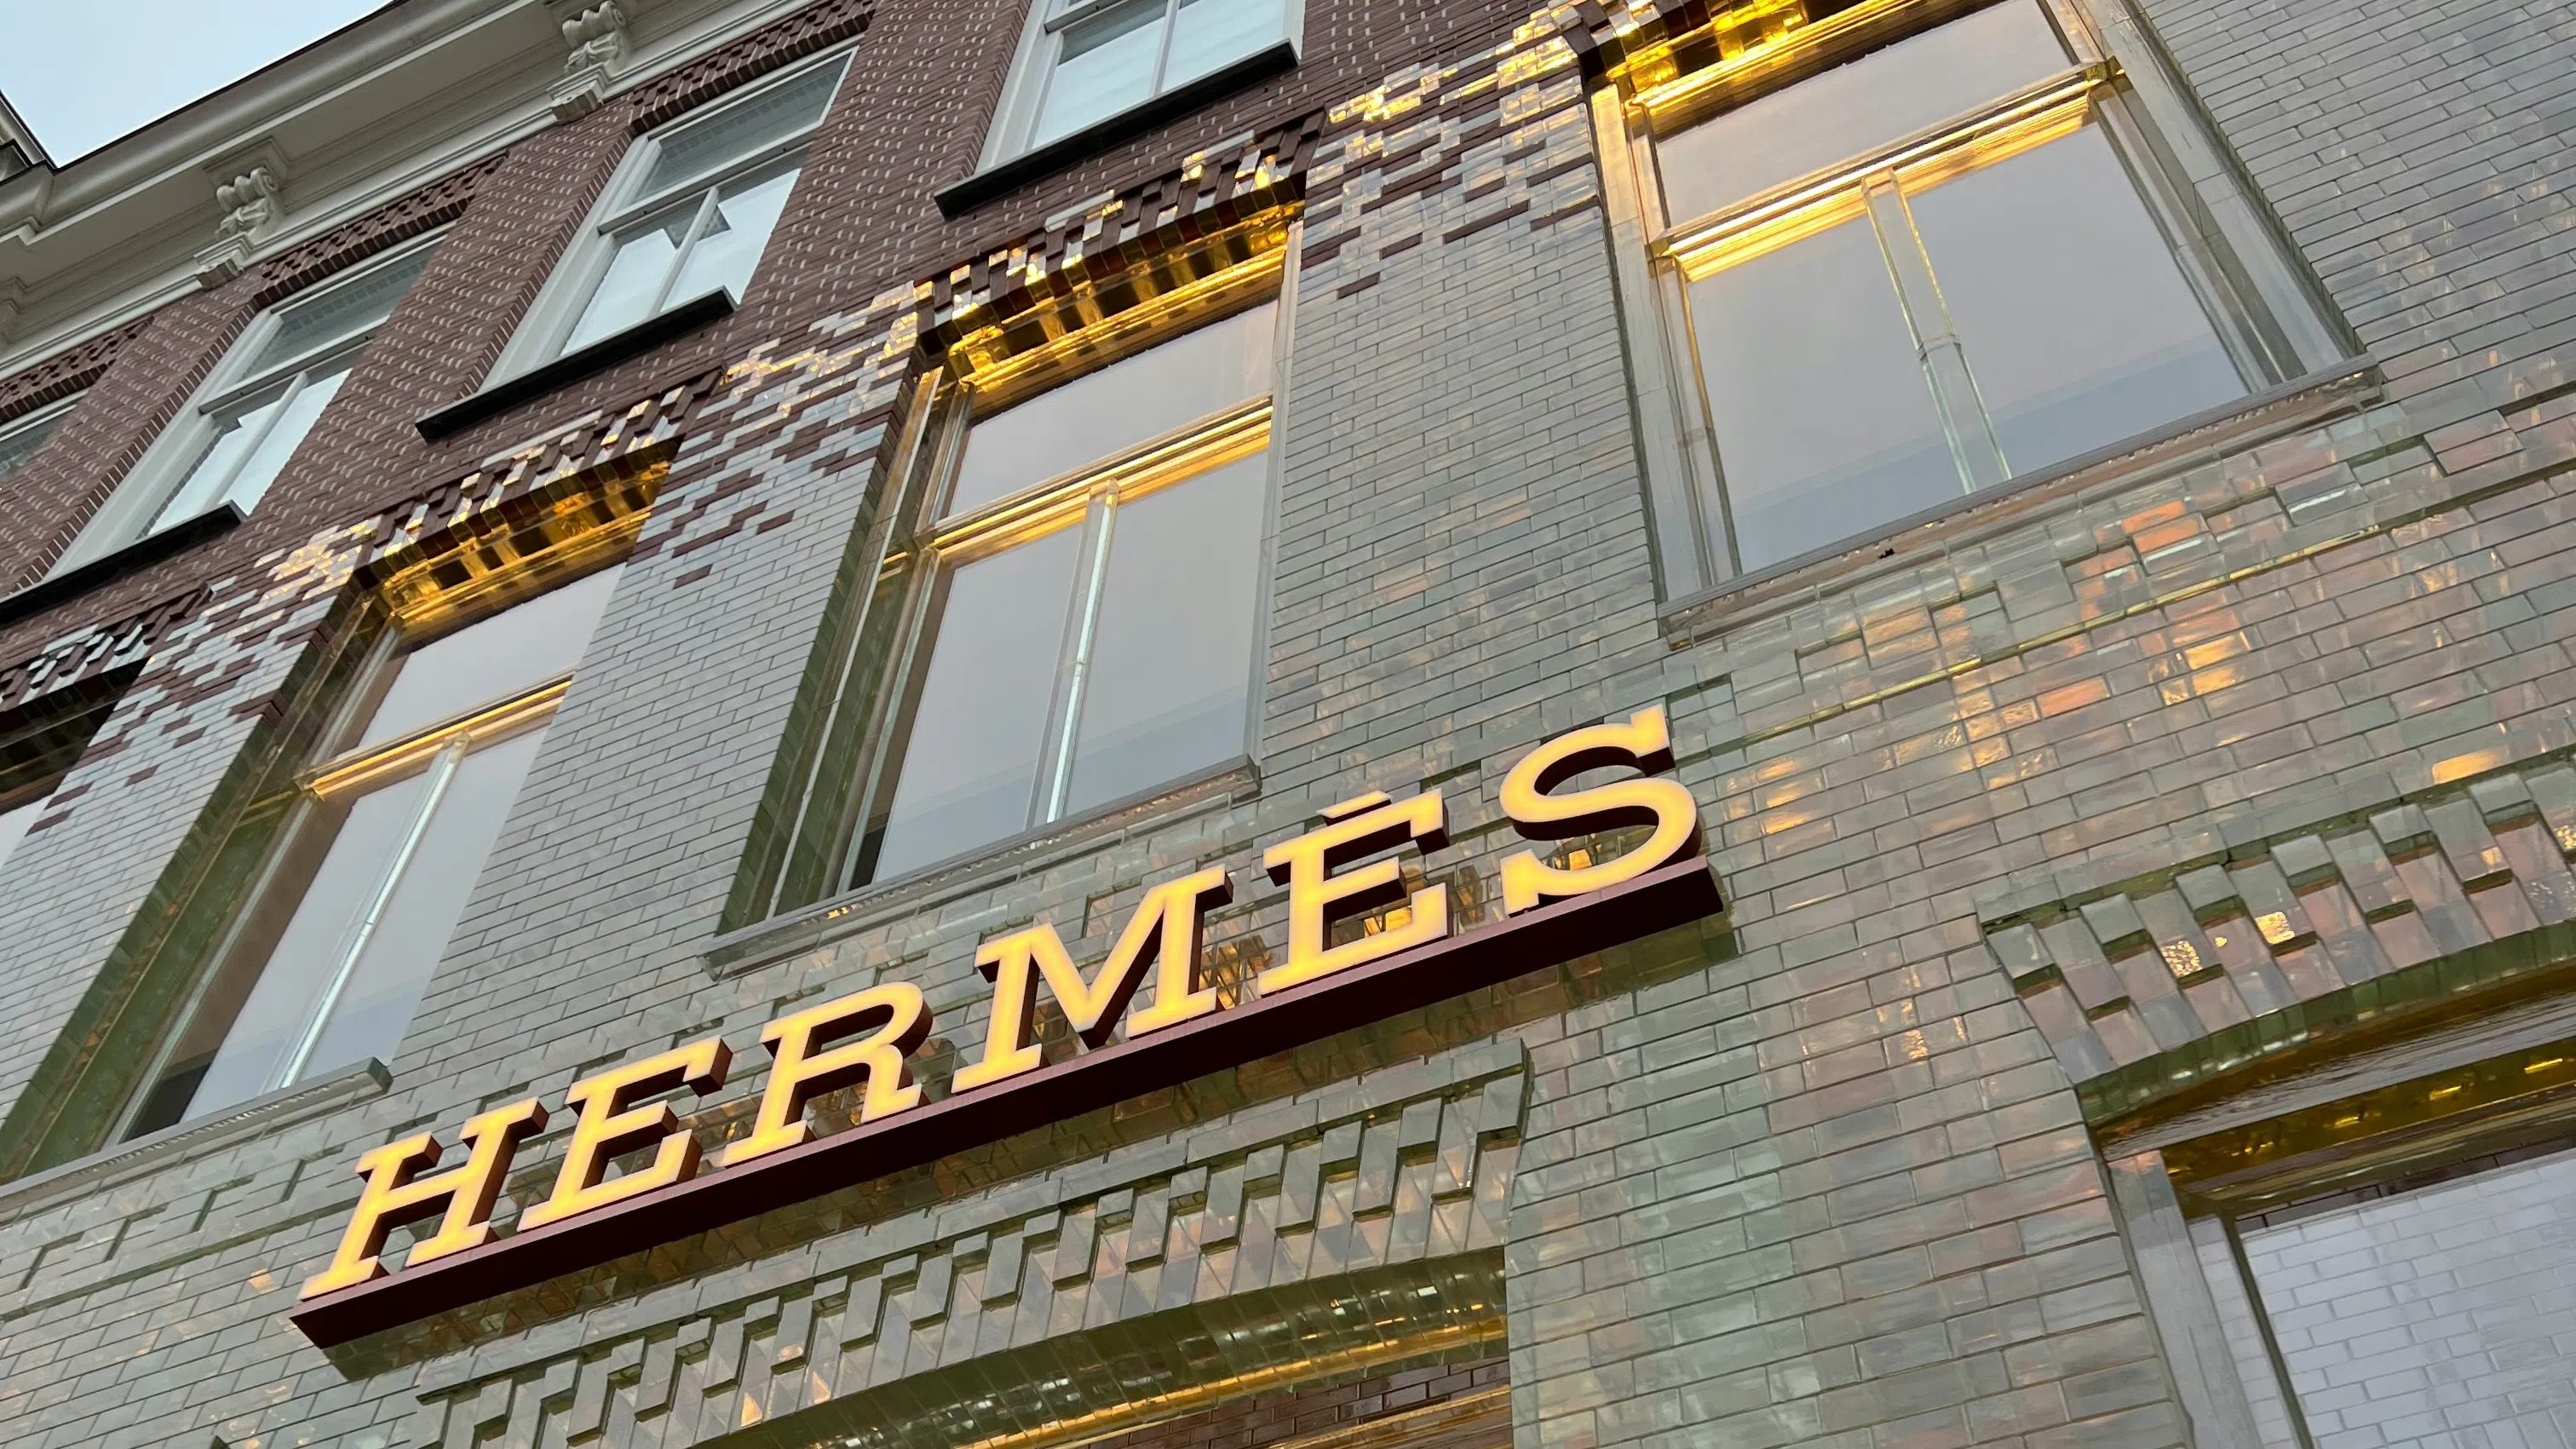 Hermes отвя конкуренцията със 17% ръст на продажбите за тримесечието